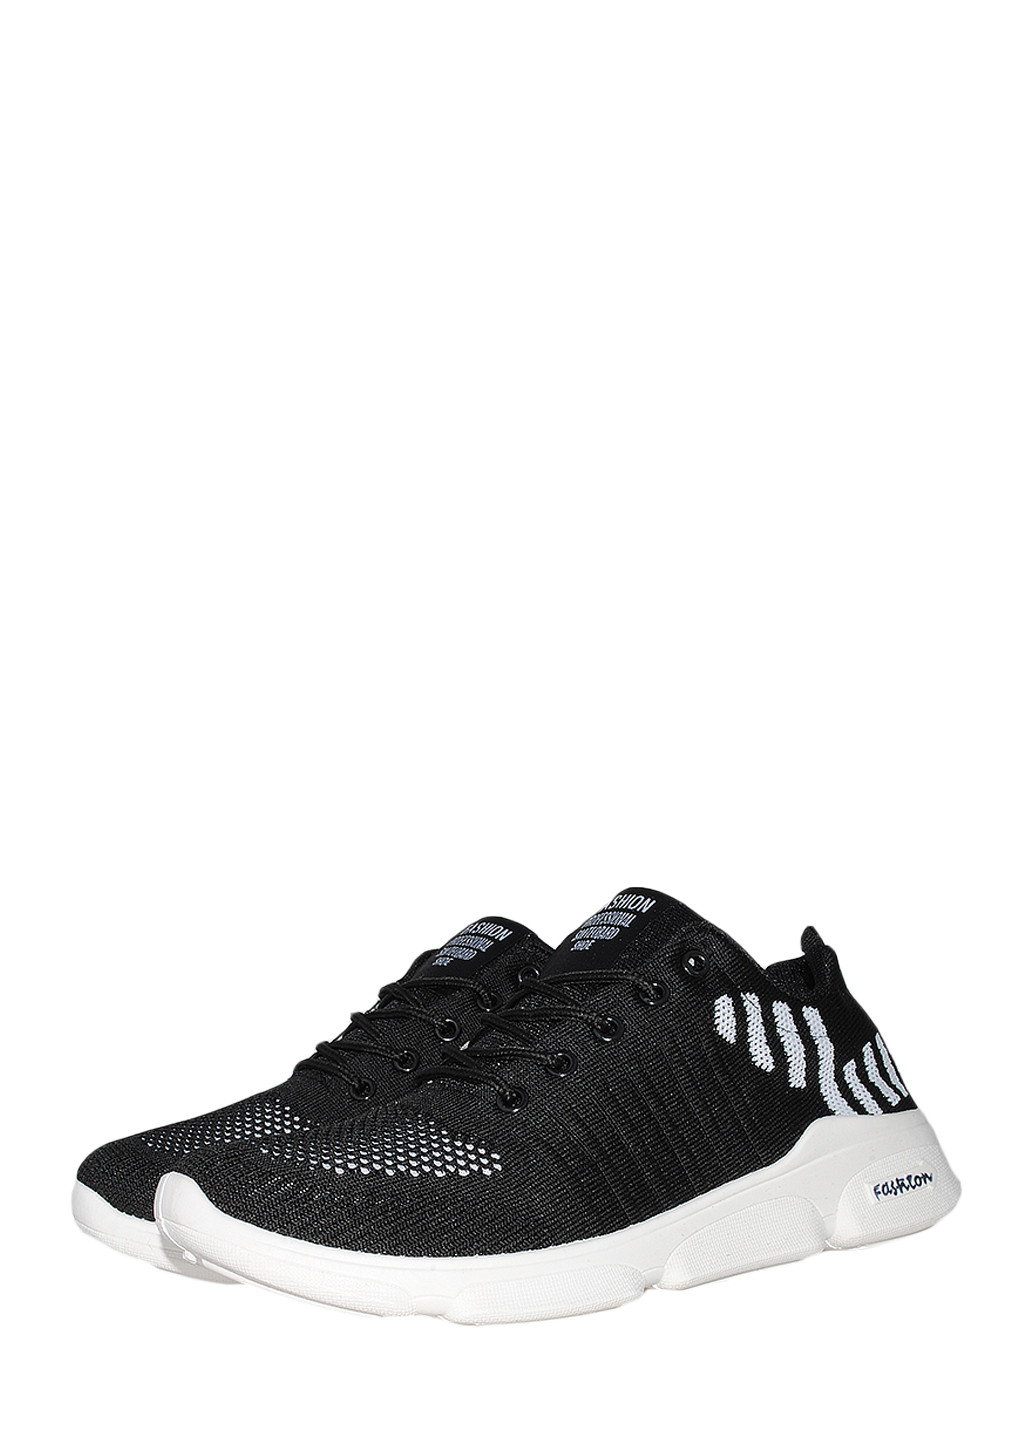 Чорно-білі Осінні кросівки n45 black-white Ideal